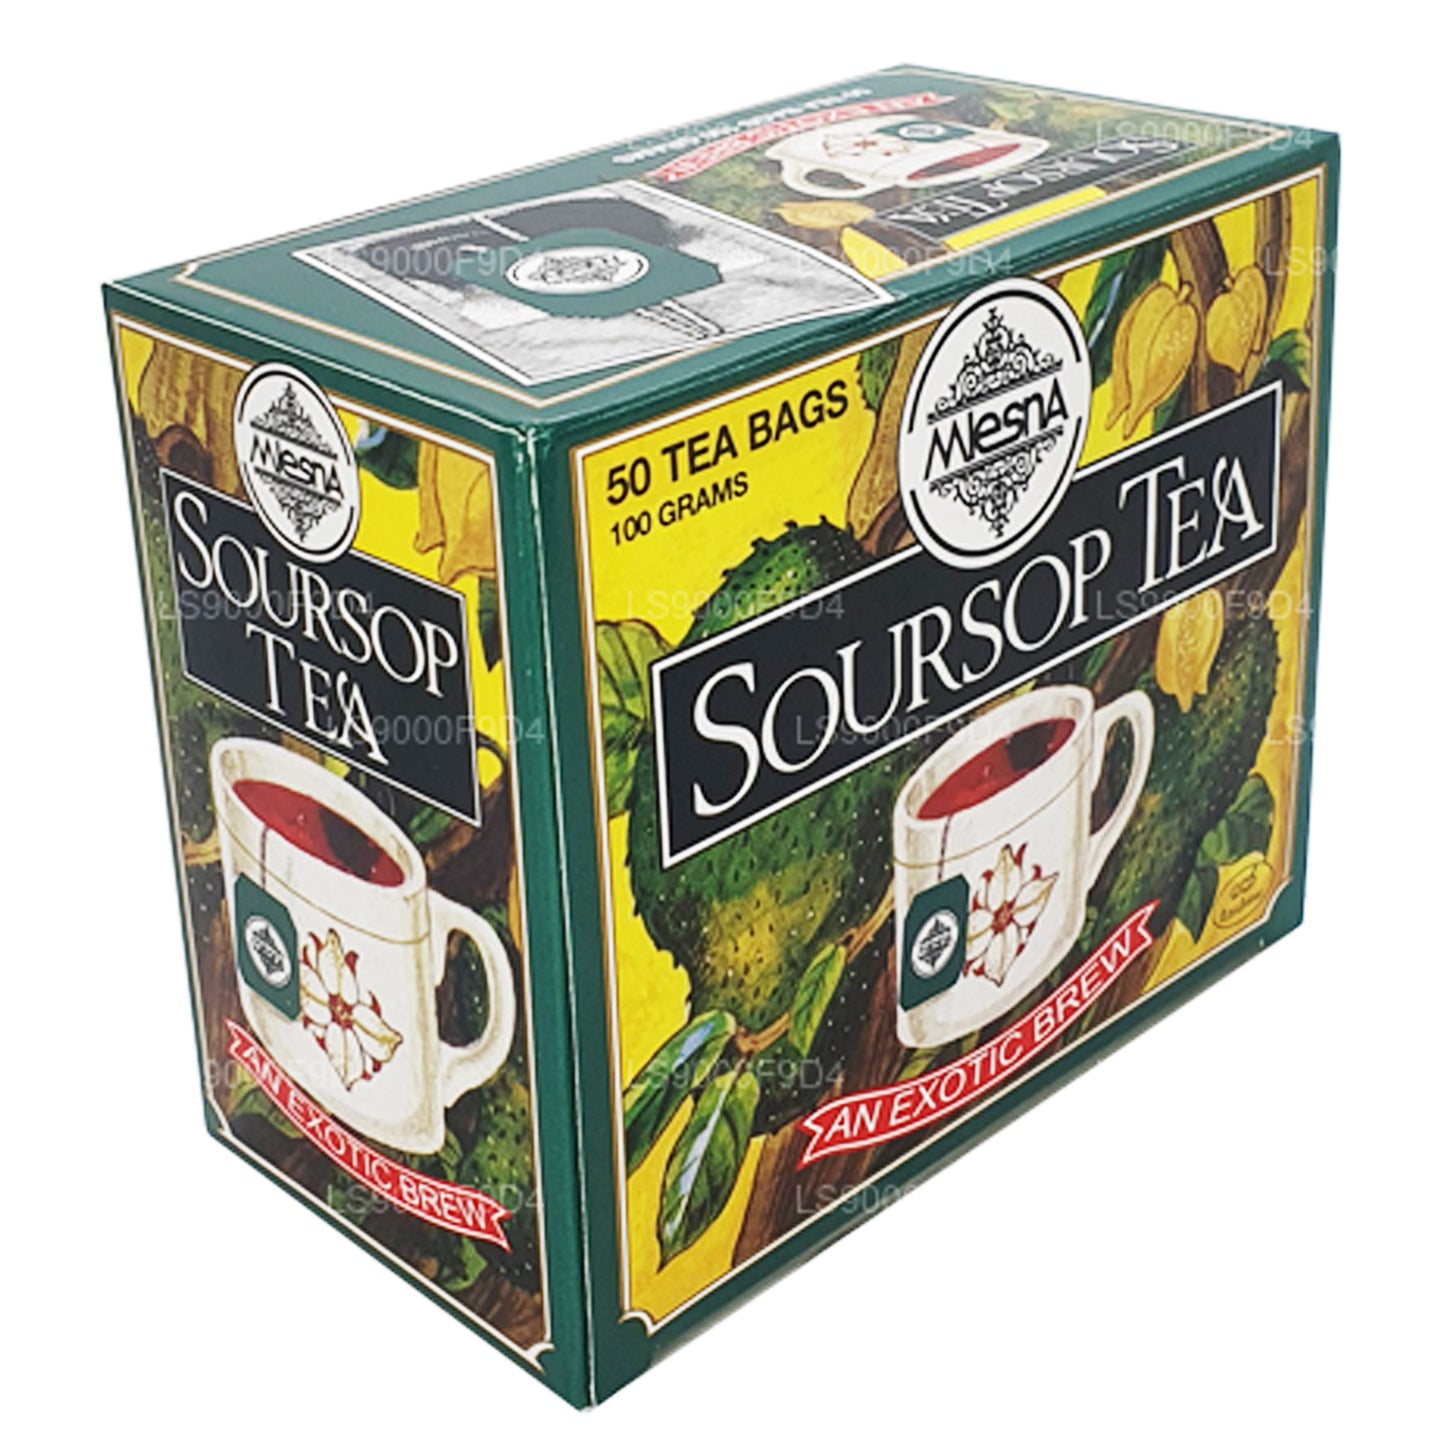 Mlesna Soursop Çay 'Egzotik Bira' 50 Çay Poşeti (100g)